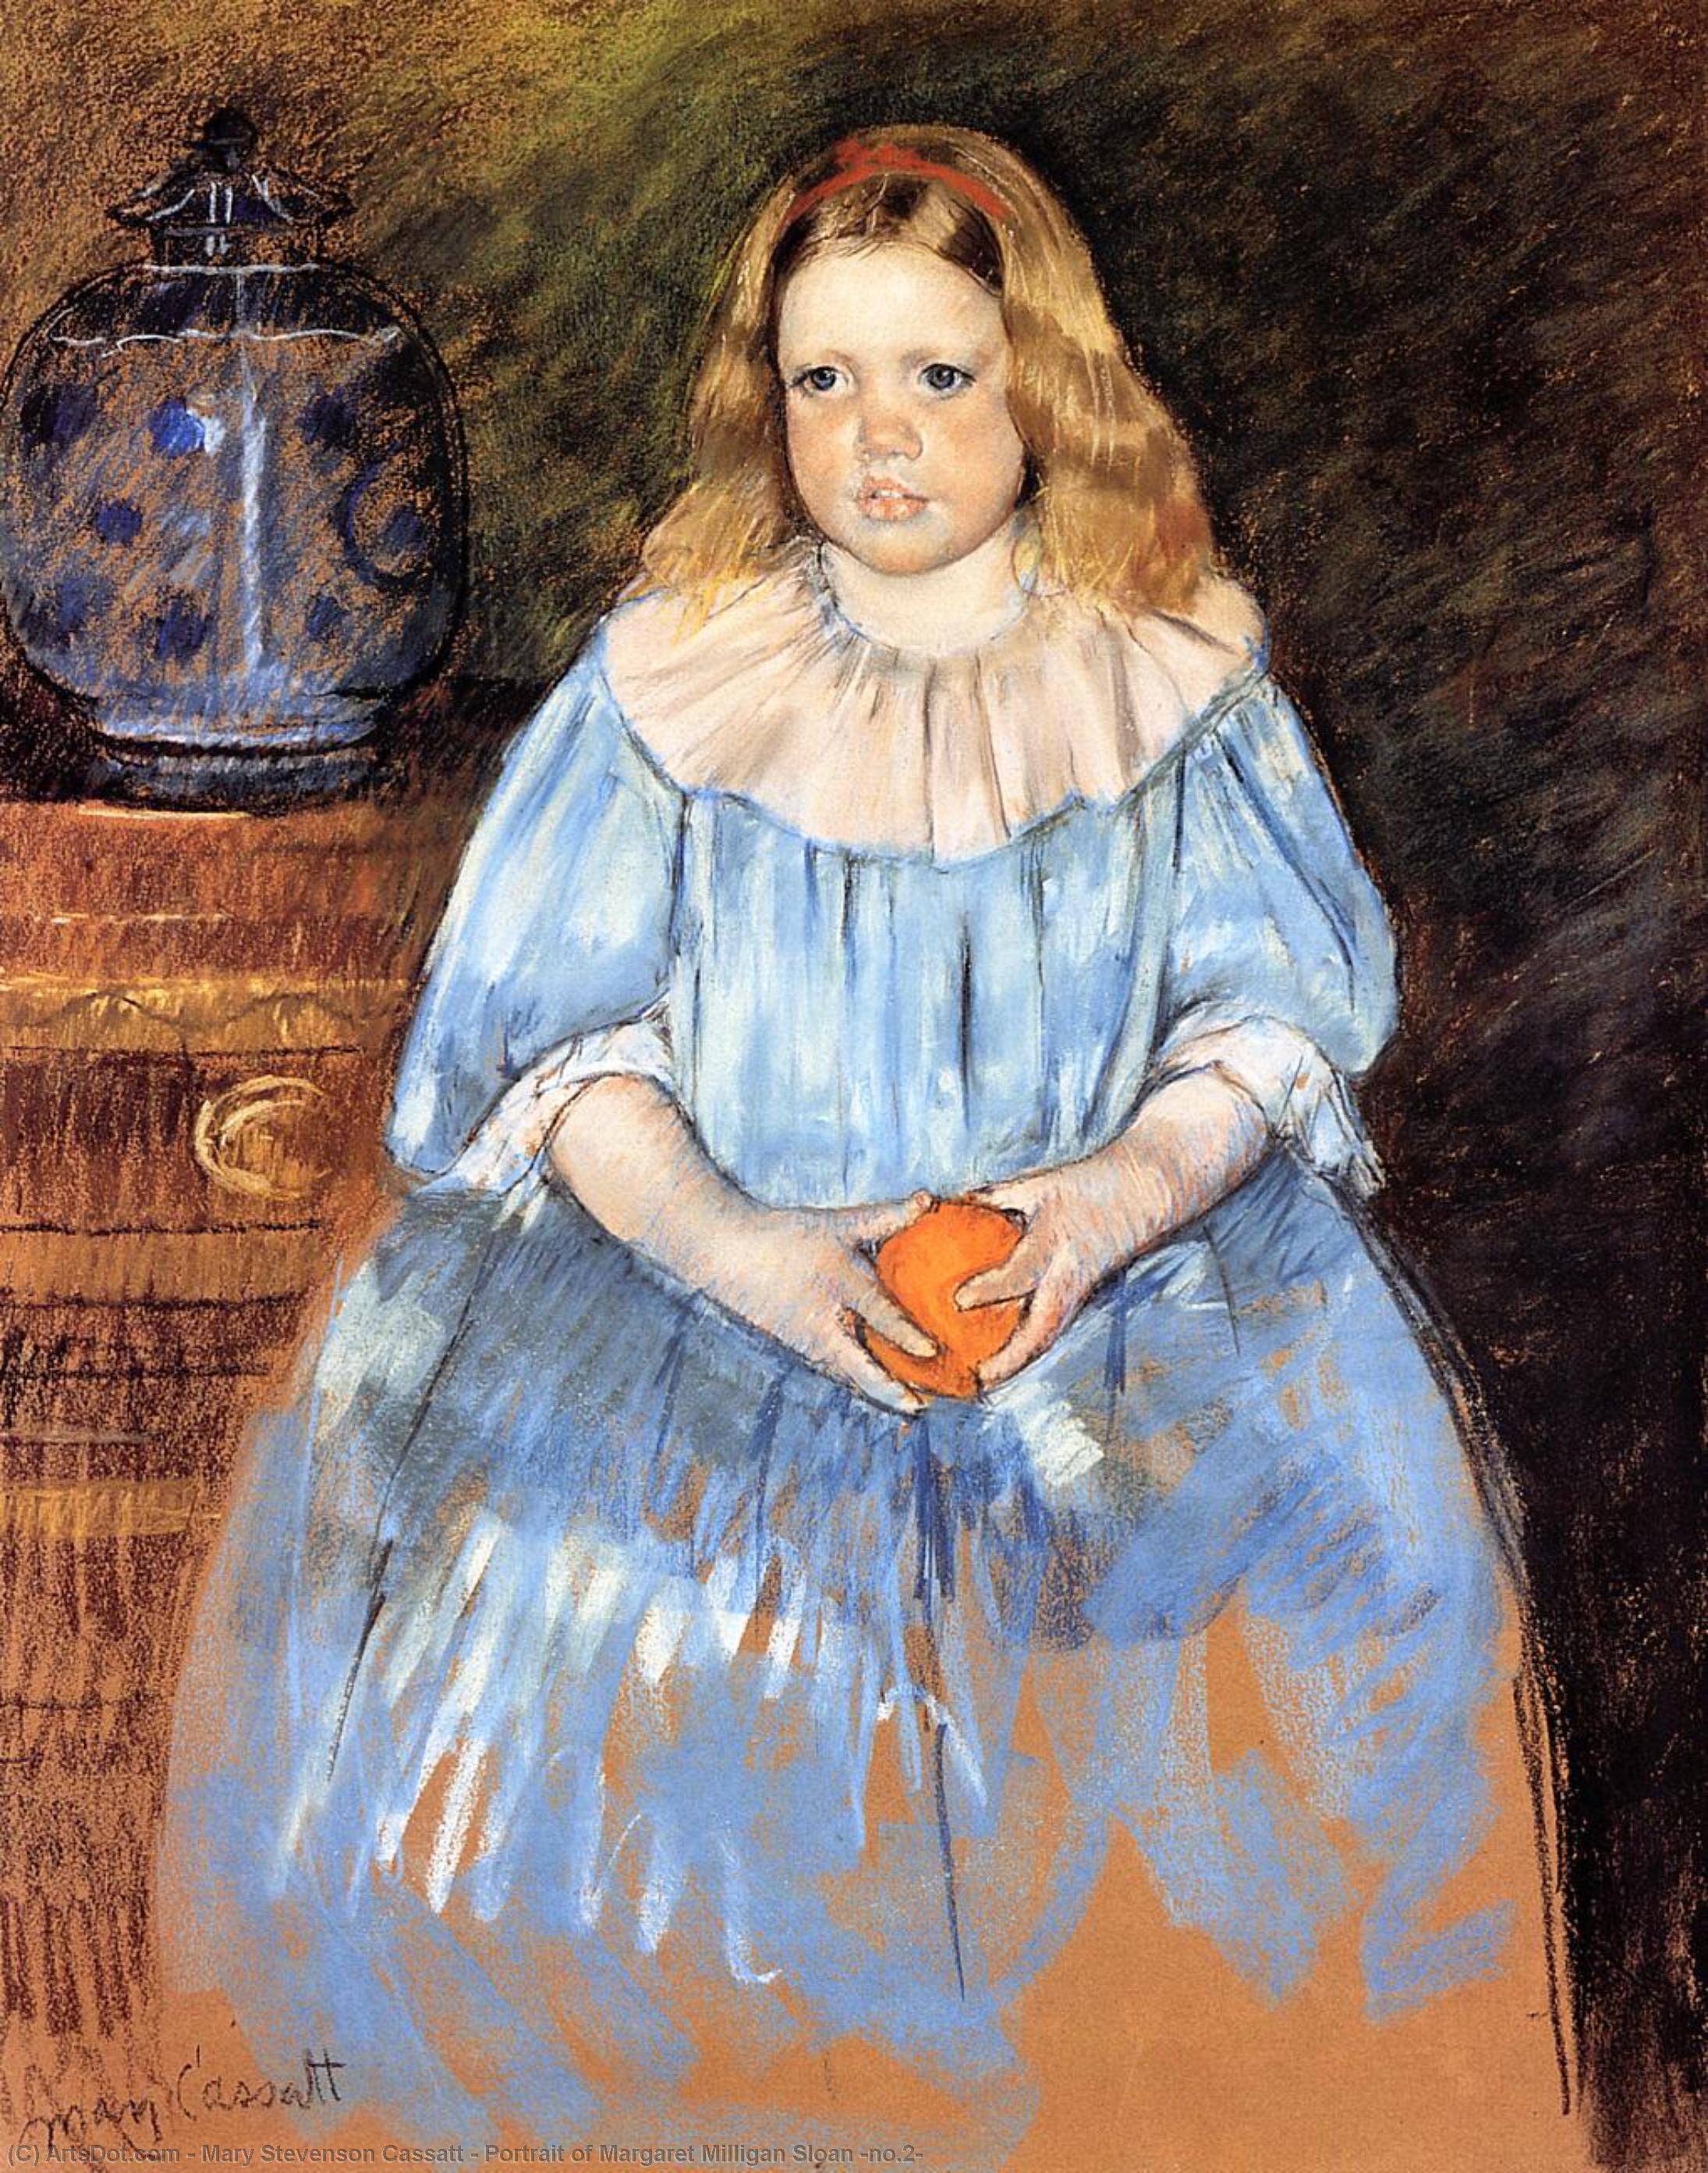 WikiOO.org - Enciklopedija likovnih umjetnosti - Slikarstvo, umjetnička djela Mary Stevenson Cassatt - Portrait of Margaret Milligan Sloan (no.2)